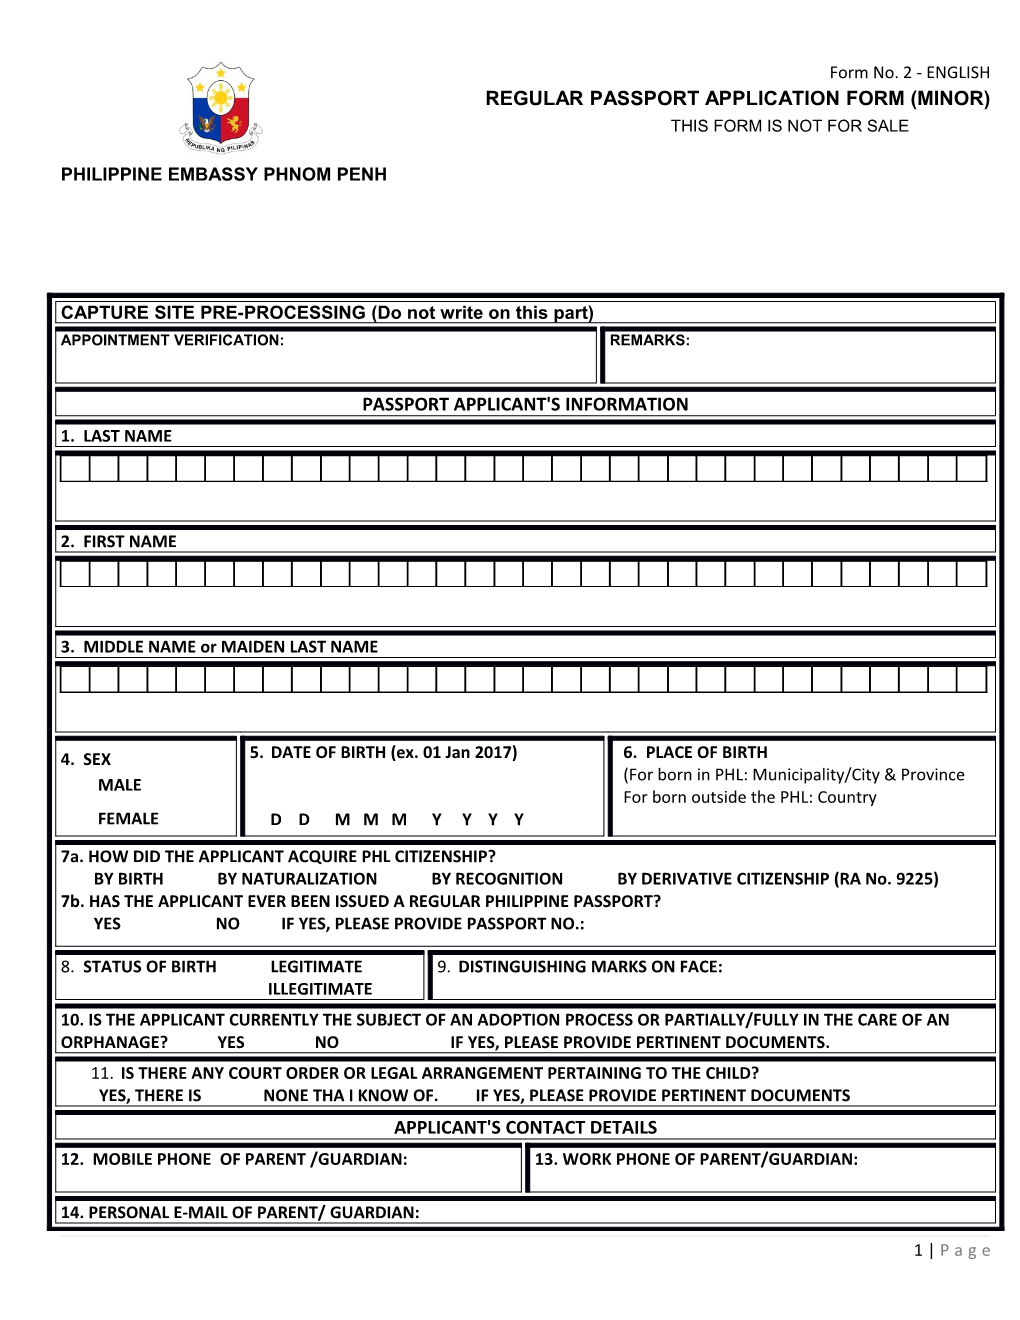 Regular Passport Application Form (Minor)